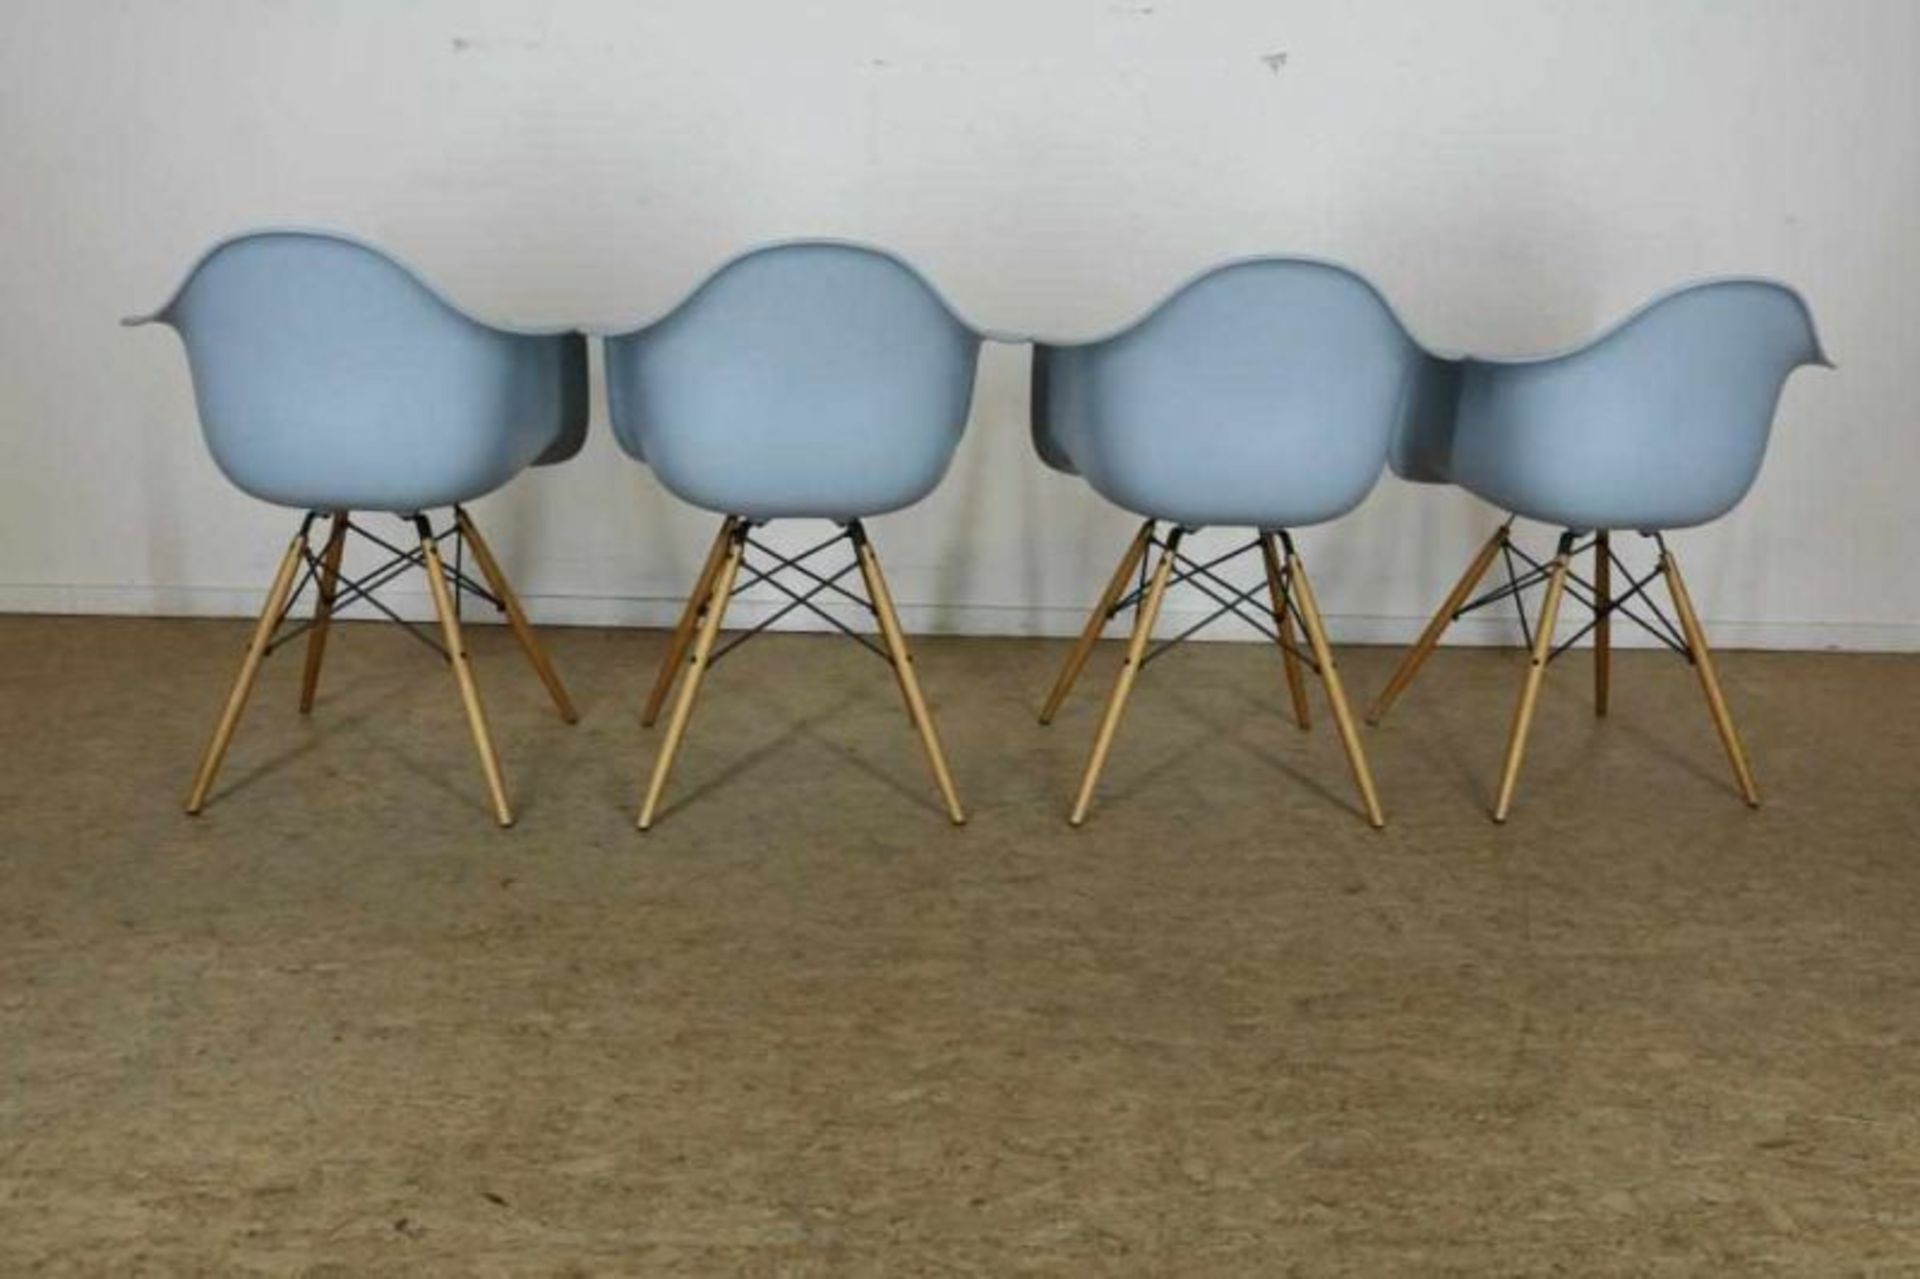 Serie van 4 plastiek stoelen op esdoorn poten, naar ontwerp Charles Eames voor Vitra. - Bild 2 aus 3